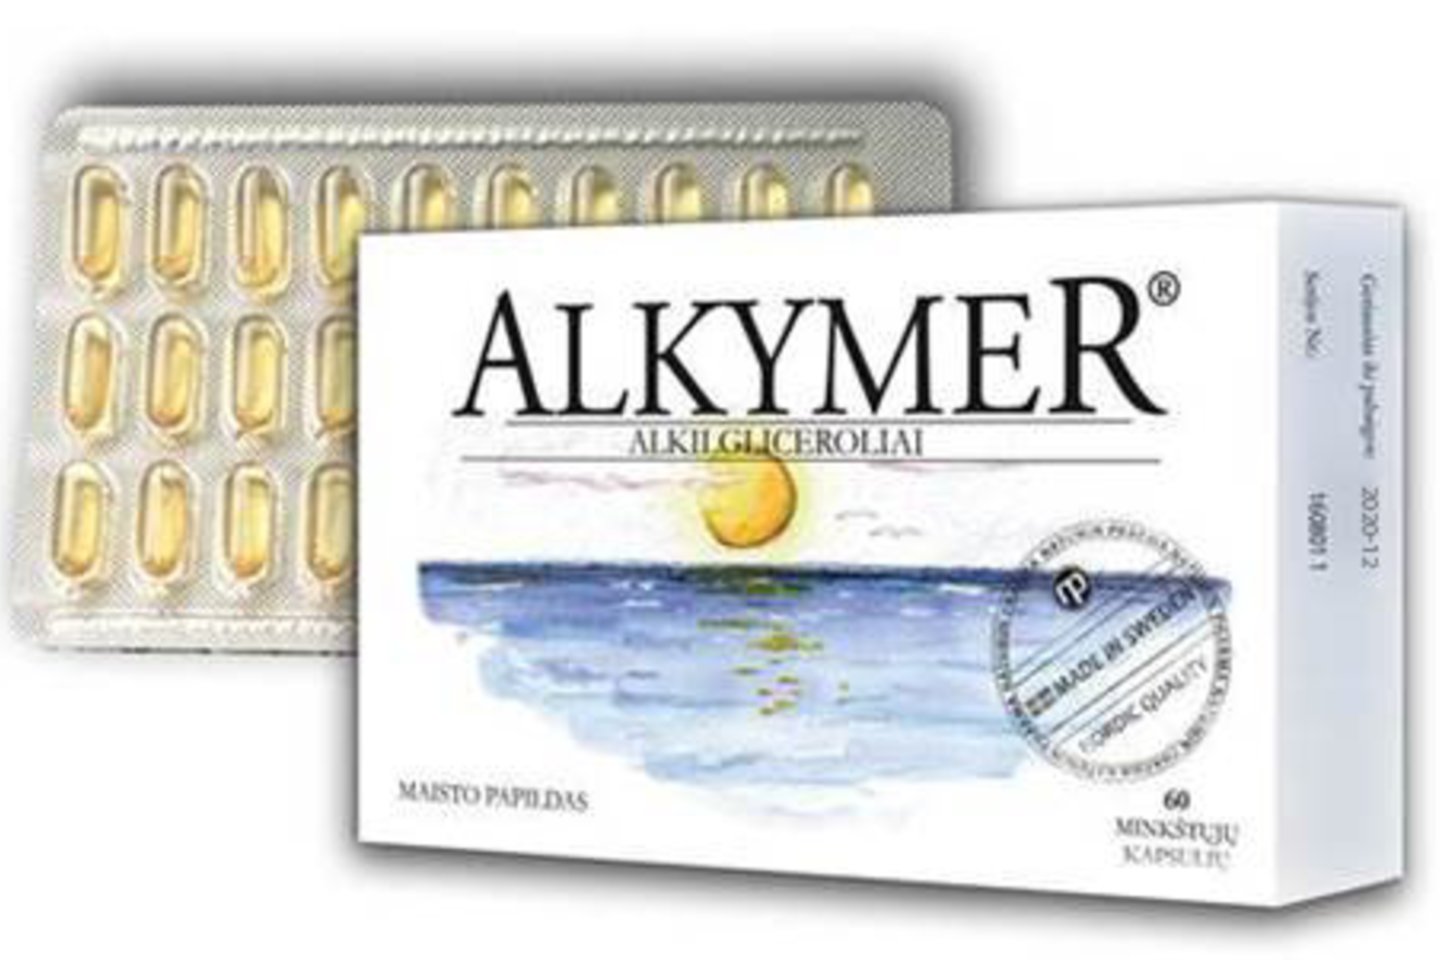 „Alkymer“ – maisto papildas su alkilgliceroliais (natūraliais lipidais), gaunamais iš ryklių kepenų aliejaus.